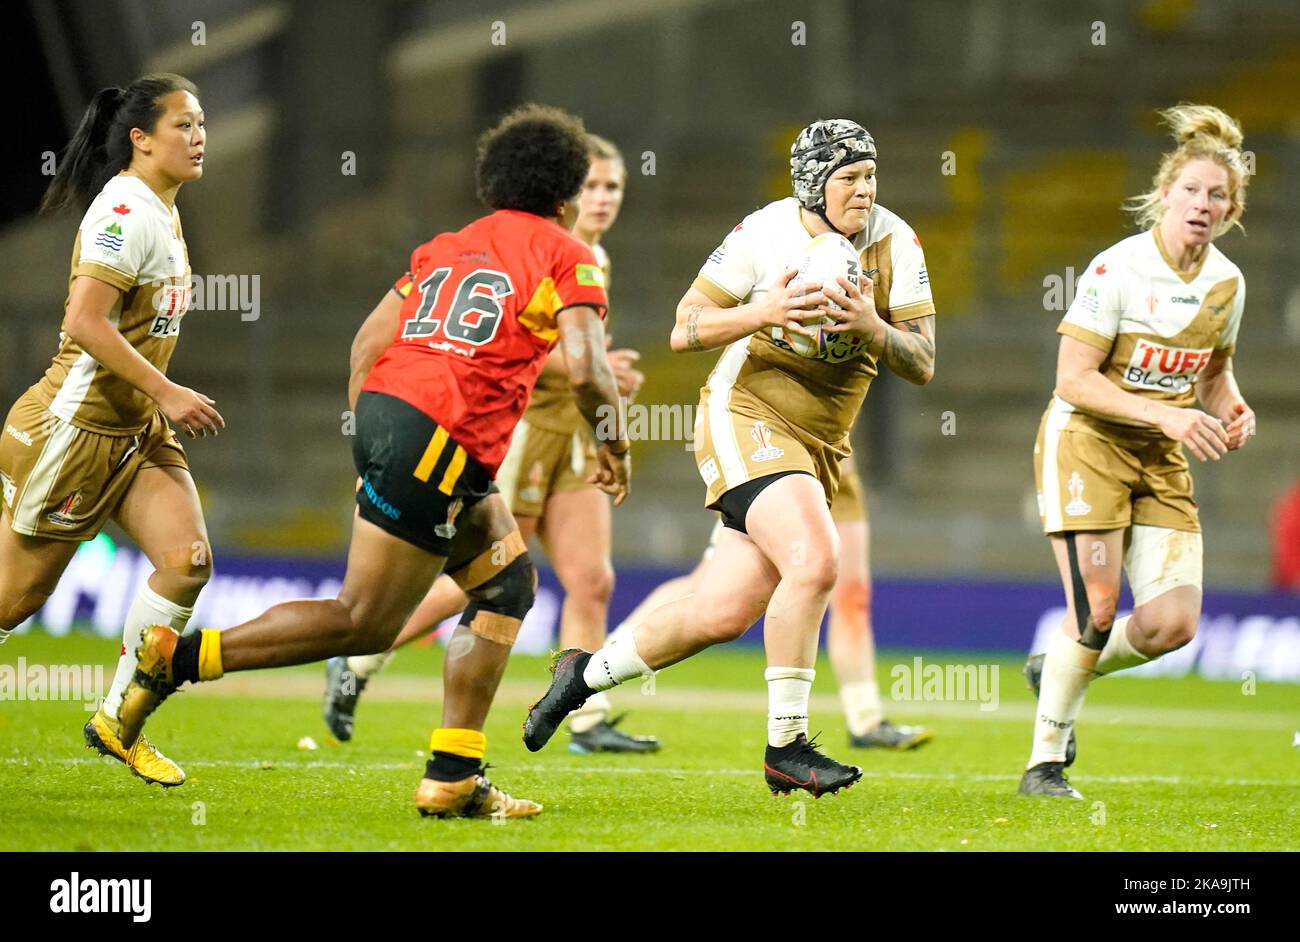 Laura Mariu del Canada in azione durante la Coppa del mondo di rugby femminile Una partita all'Headingley Stadium, Leeds. Data immagine: Martedì 1 novembre 2022. Foto Stock